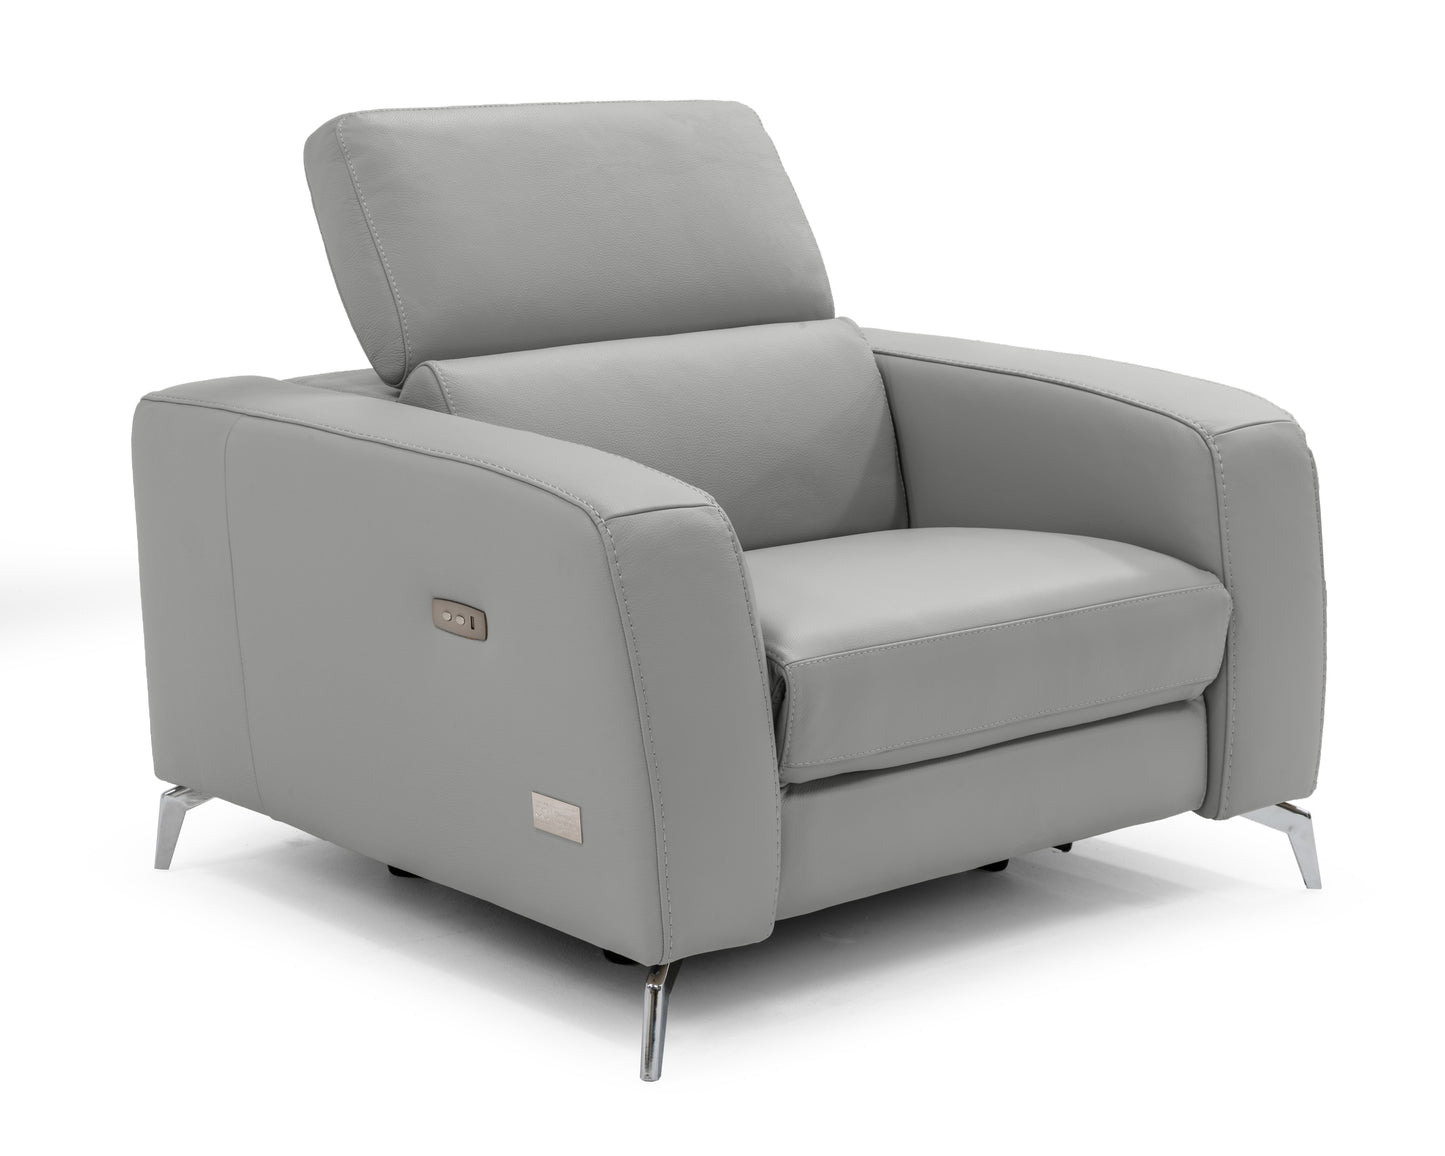 Coronelli Collezioni Turin - Italian White Leather Recliner Chair | Lounge Chairs | Modishstore - 2